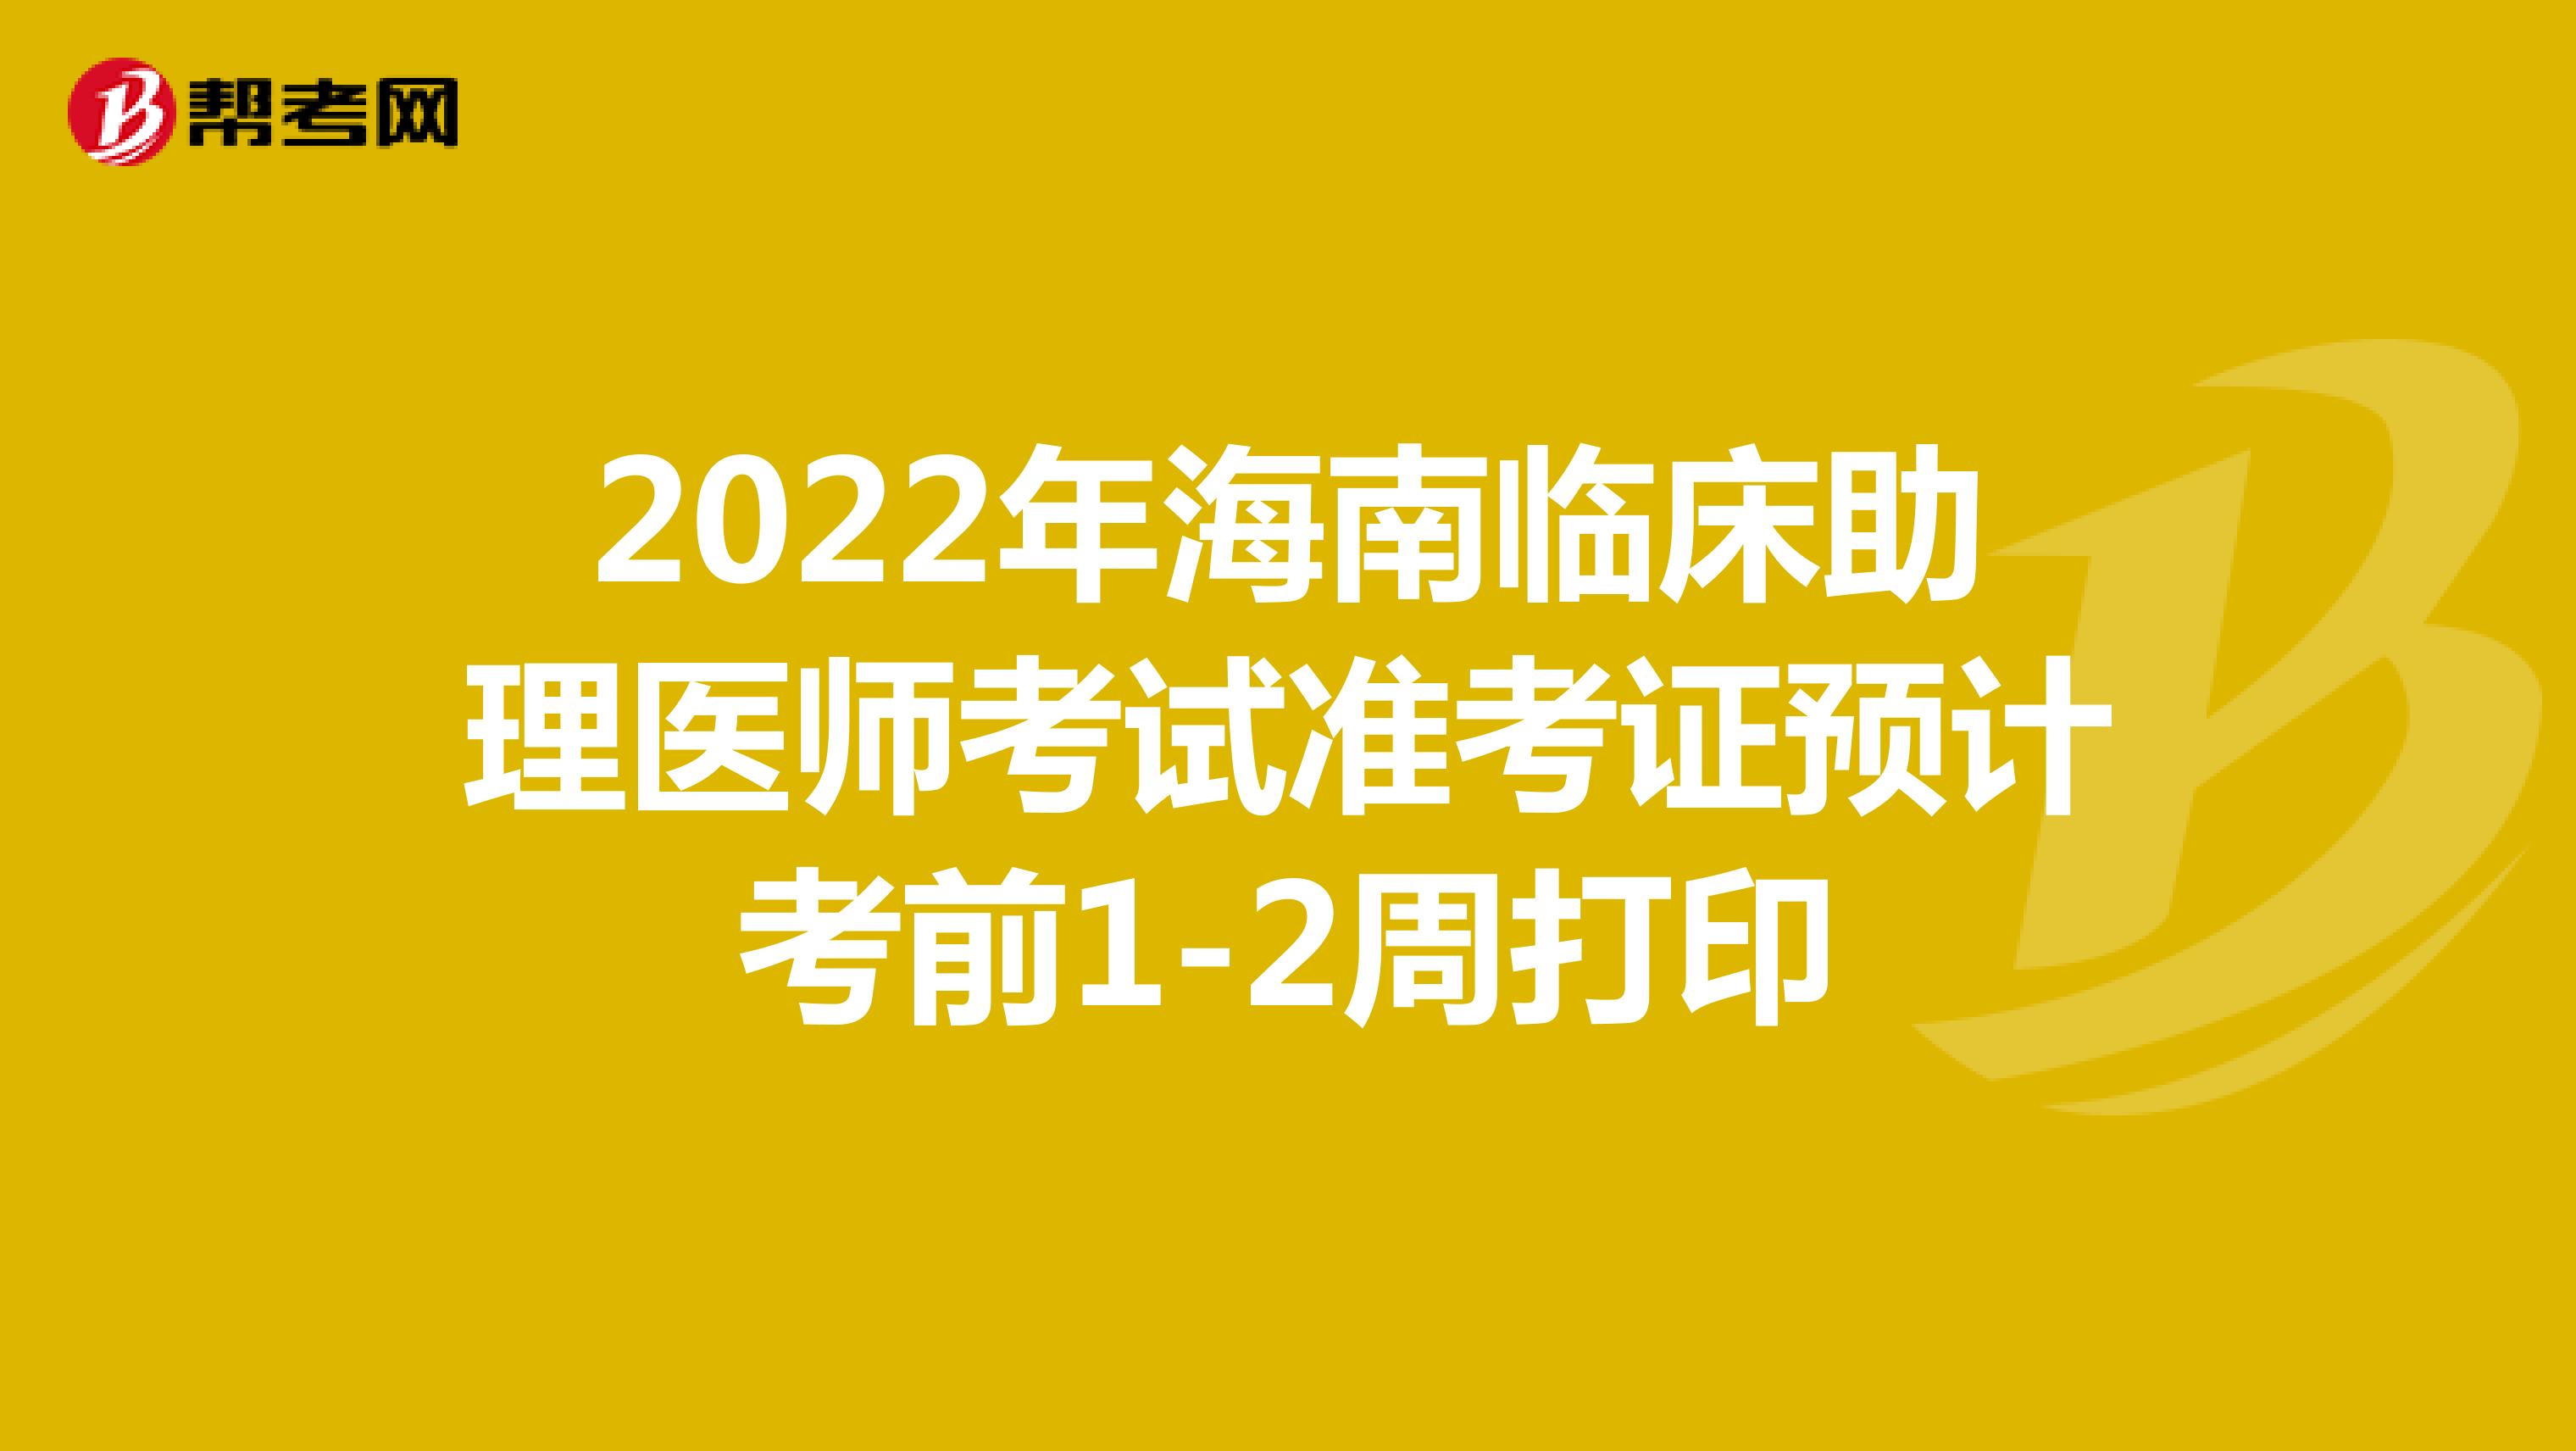 2022年海南临床助理医师考试准考证预计考前1-2周打印